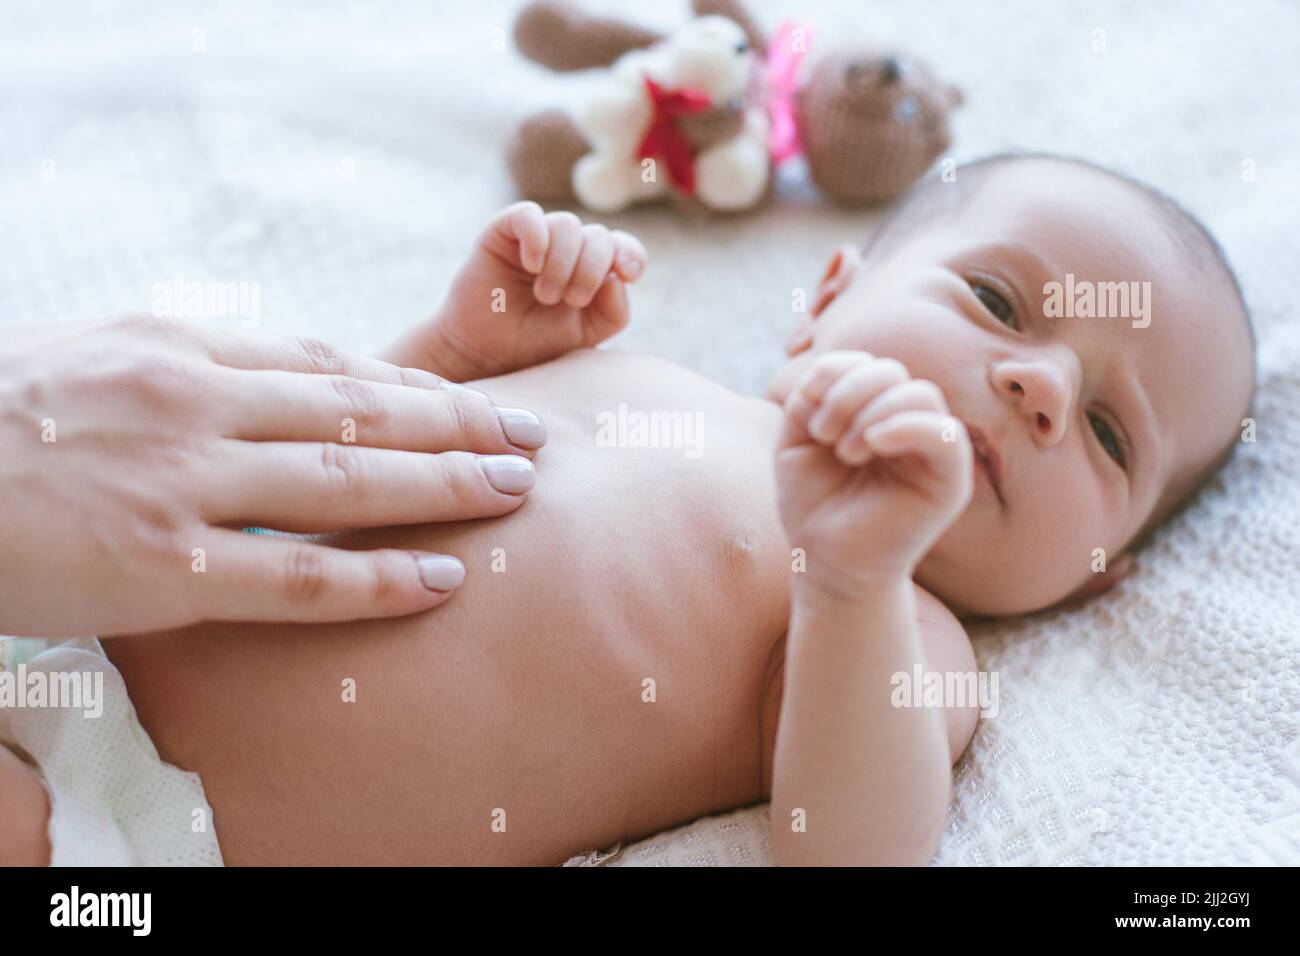 le mani della madre picchiano delicatamente il neonato Foto Stock